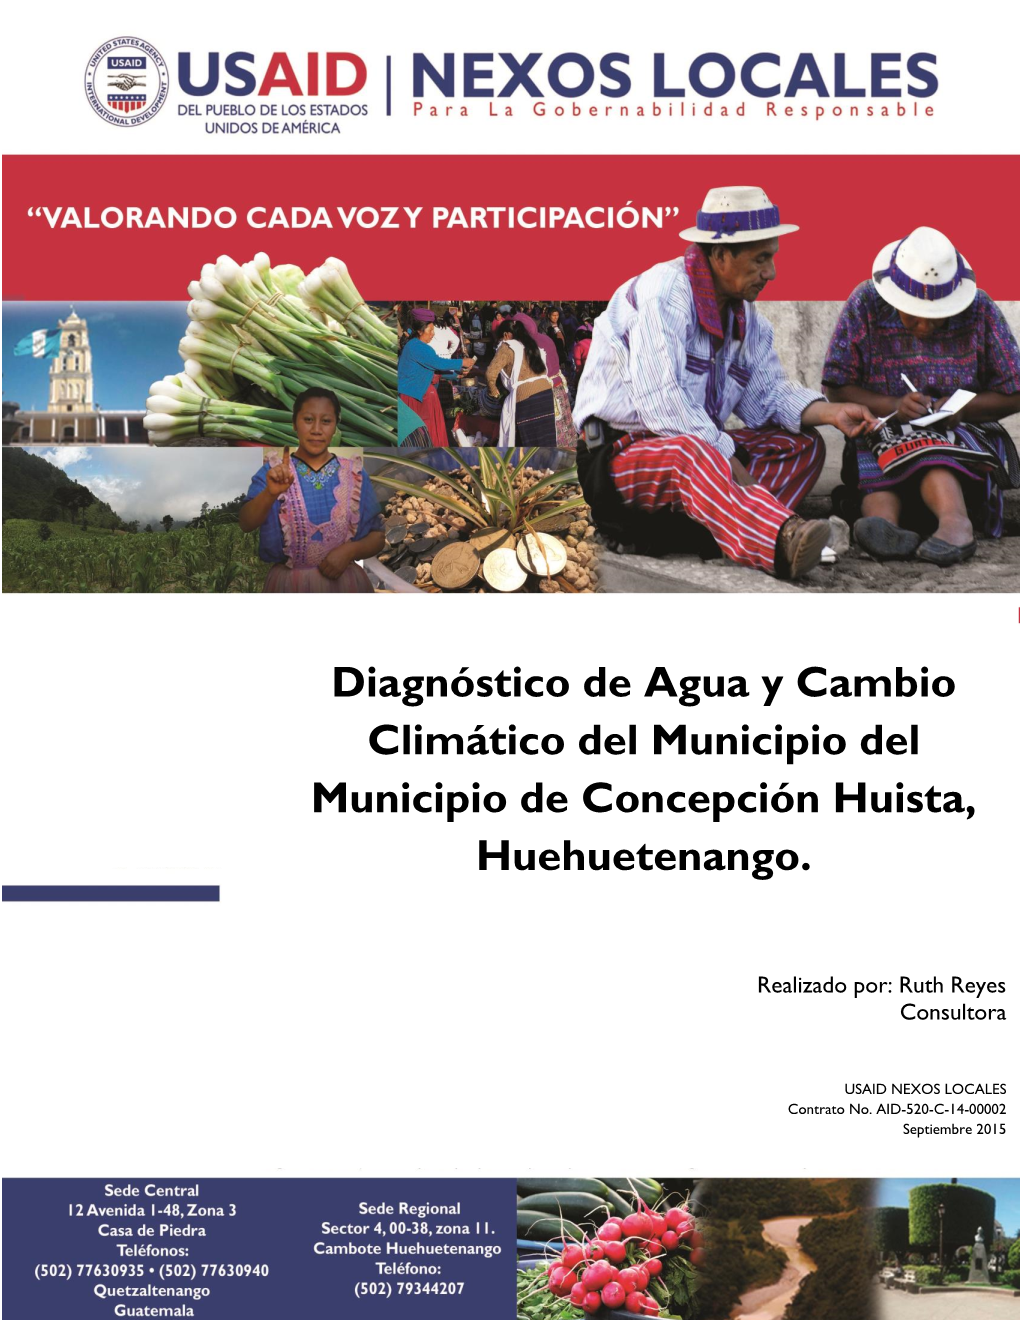 Diagnóstico De Agua Y Cambio Climático Del Municipio Del Municipio De Concepción Huista, Huehuetenango